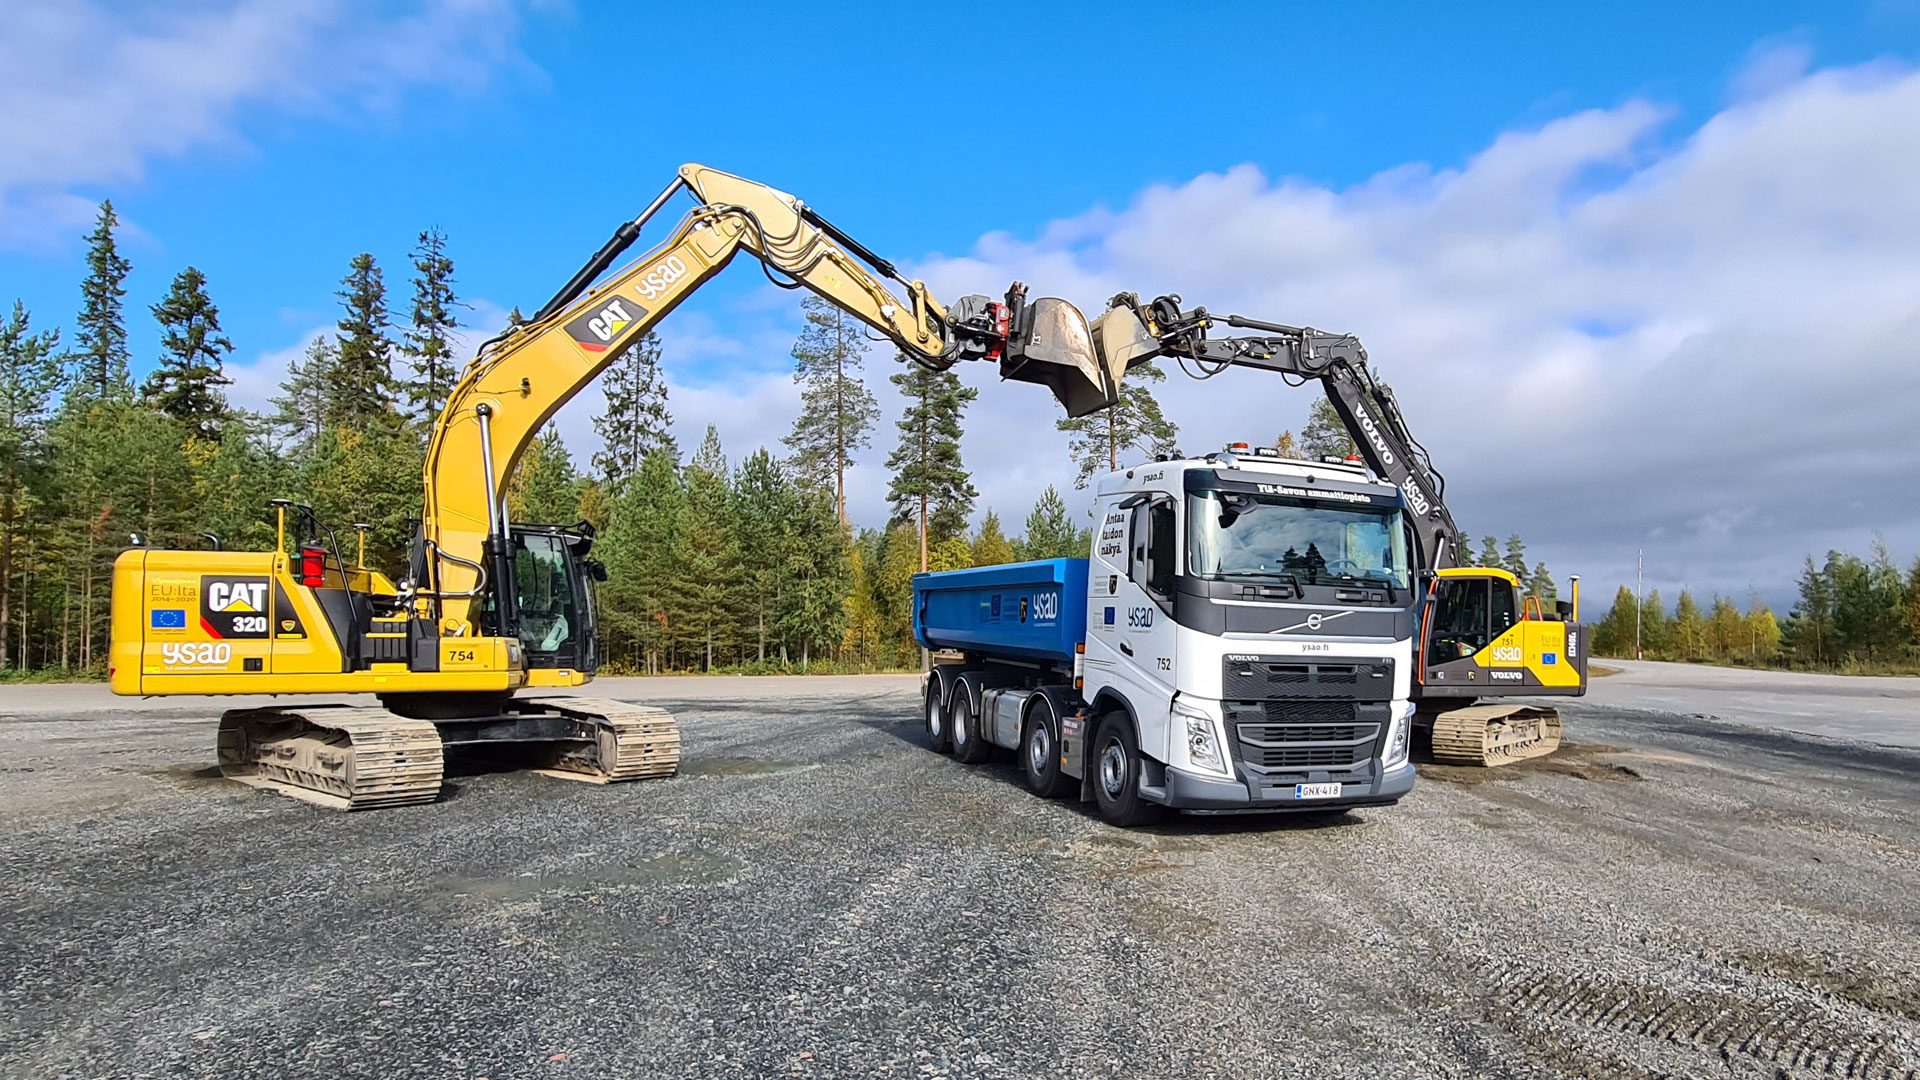 SVE Logistikkompetens huvudbild med två grävmaskiner och lastbil.